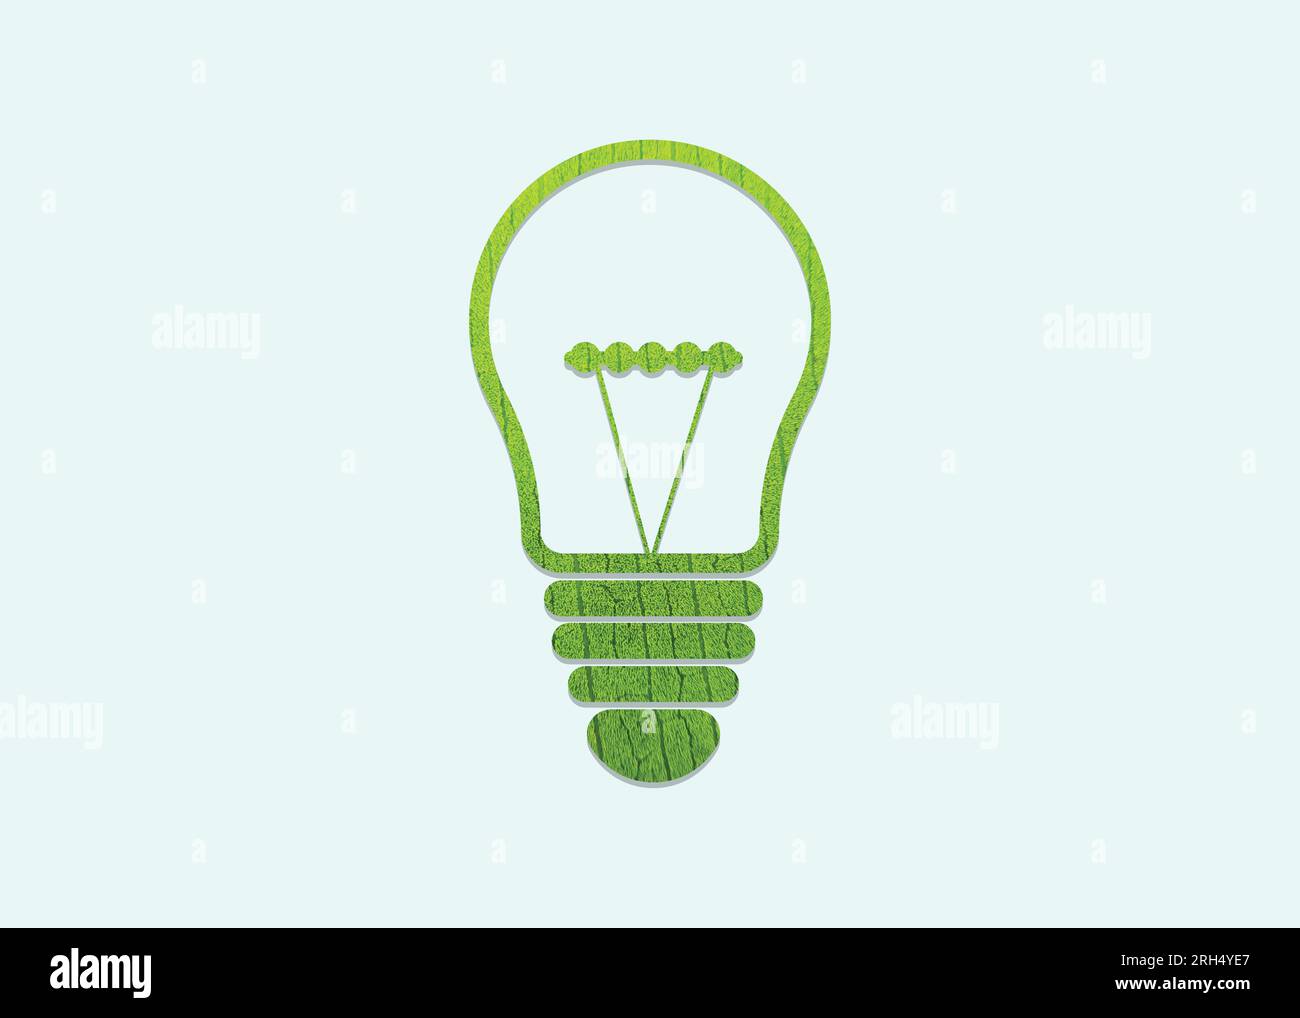 Fond de concept de jour d'environnement d'ampoule de feuille verte et de jour de terre. Ampoule concept de développement durable, écologie et protection de l'environnement Illustration de Vecteur